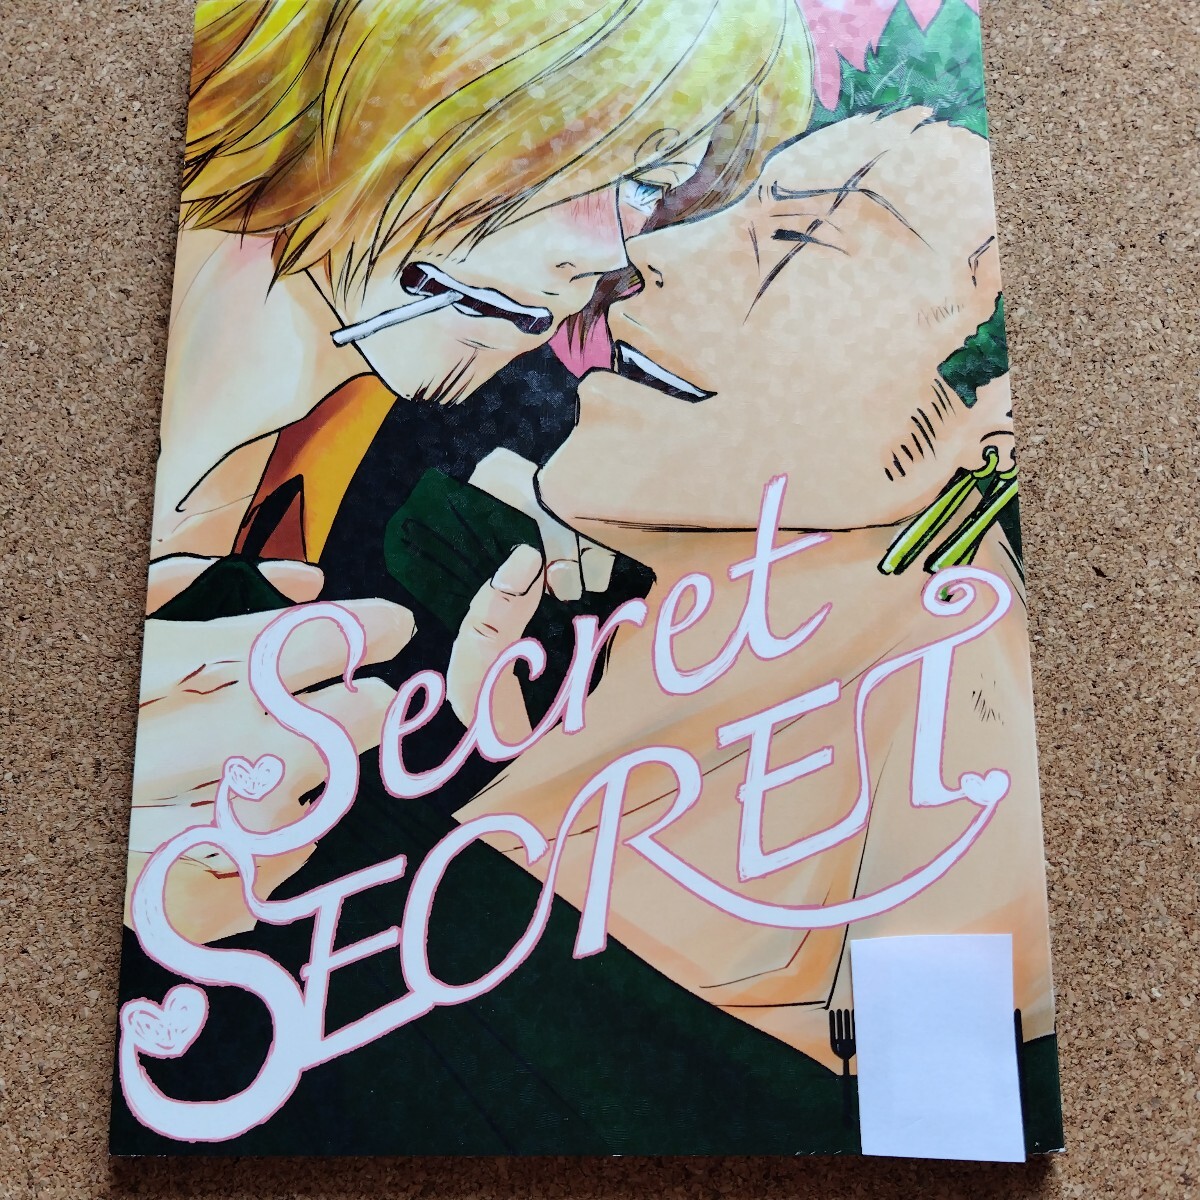 Secret SECRETzoro солнечный журнал узкого круга литераторов One-piece zoro Sanji . такой же журнал 